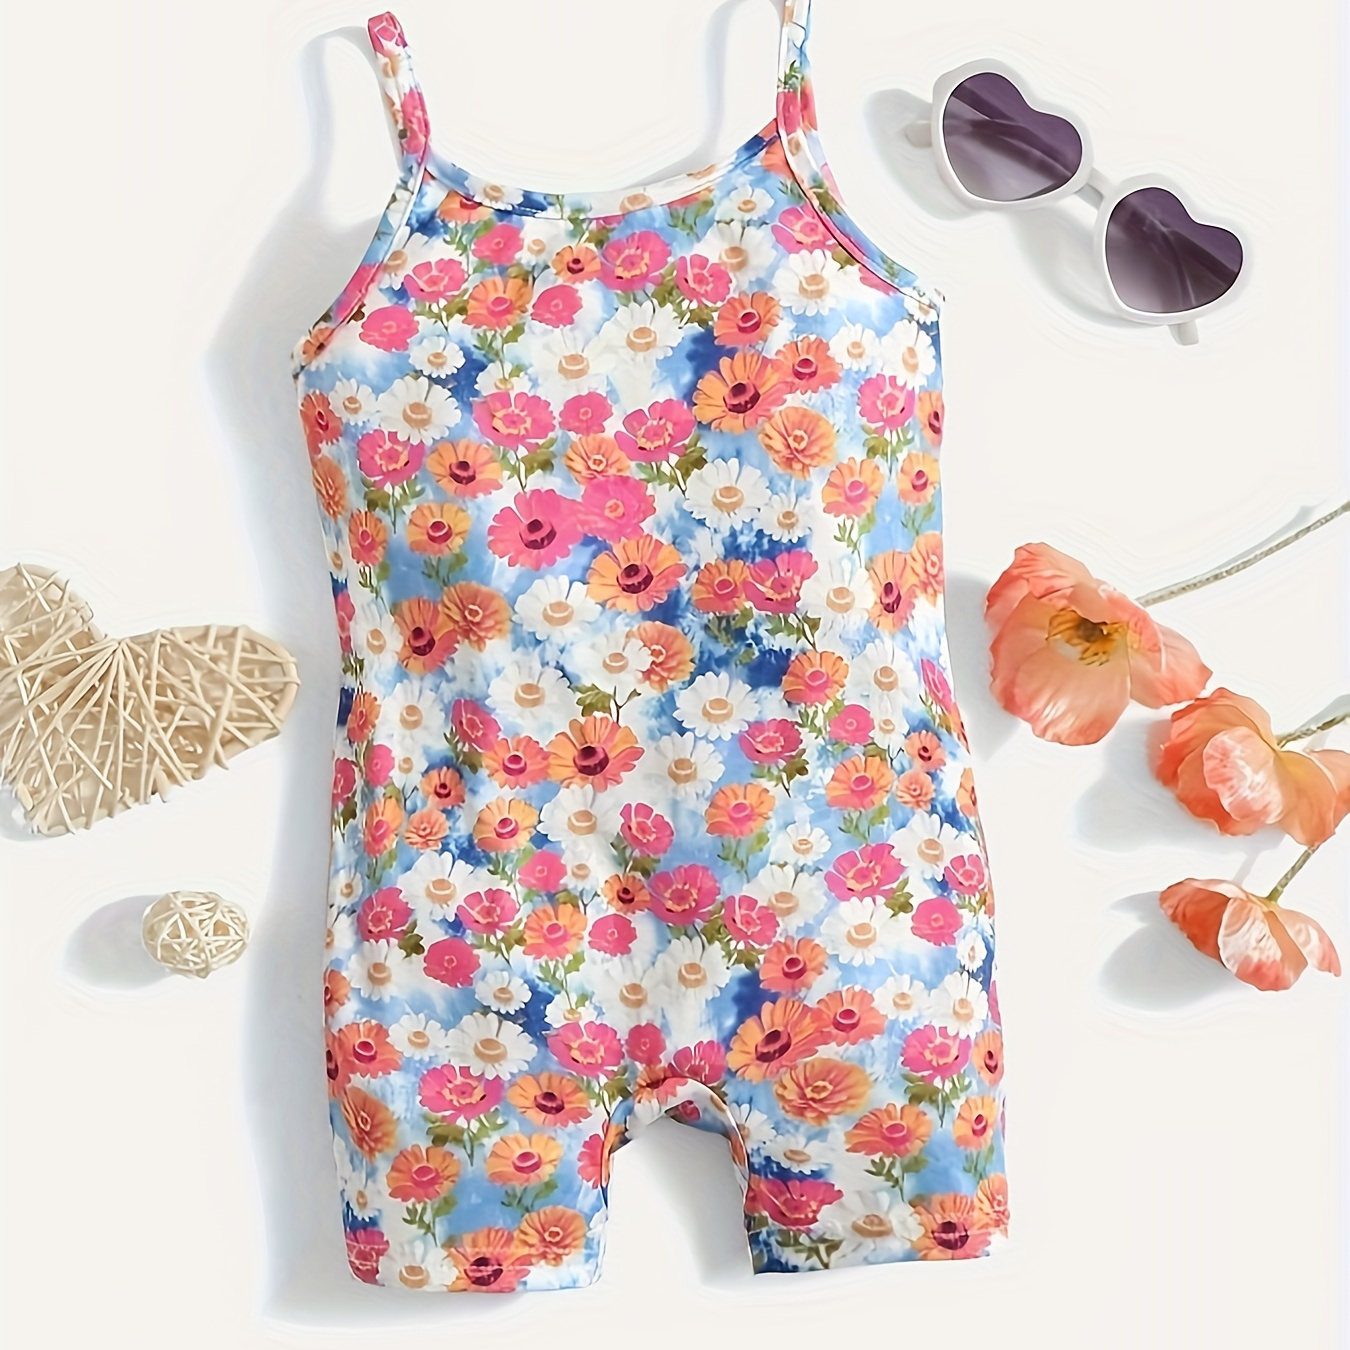 

Baby's Colorful Flower Full Print Bodysuit, Casual Sleeveless Romper, Toddler & Infant Girl's Onesie For Summer, As Gift